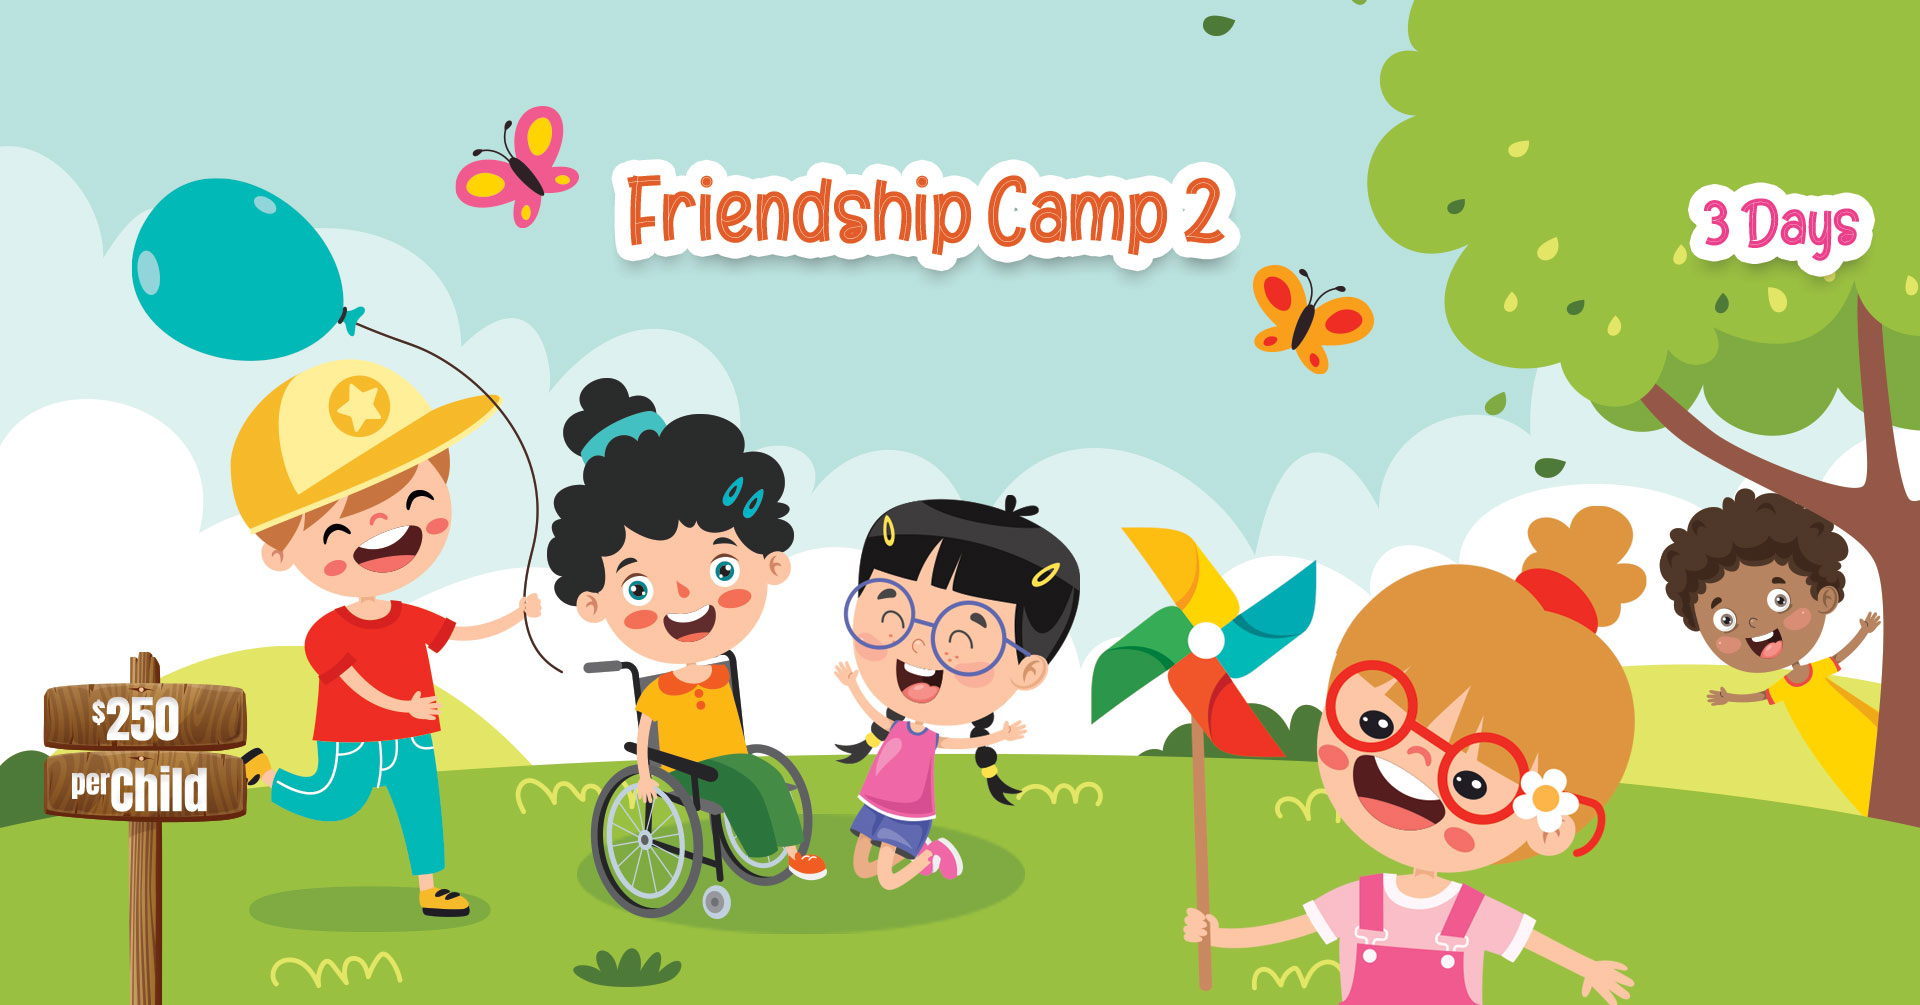 ghs-facebook-event-camps-friendship2-3-days-roseville